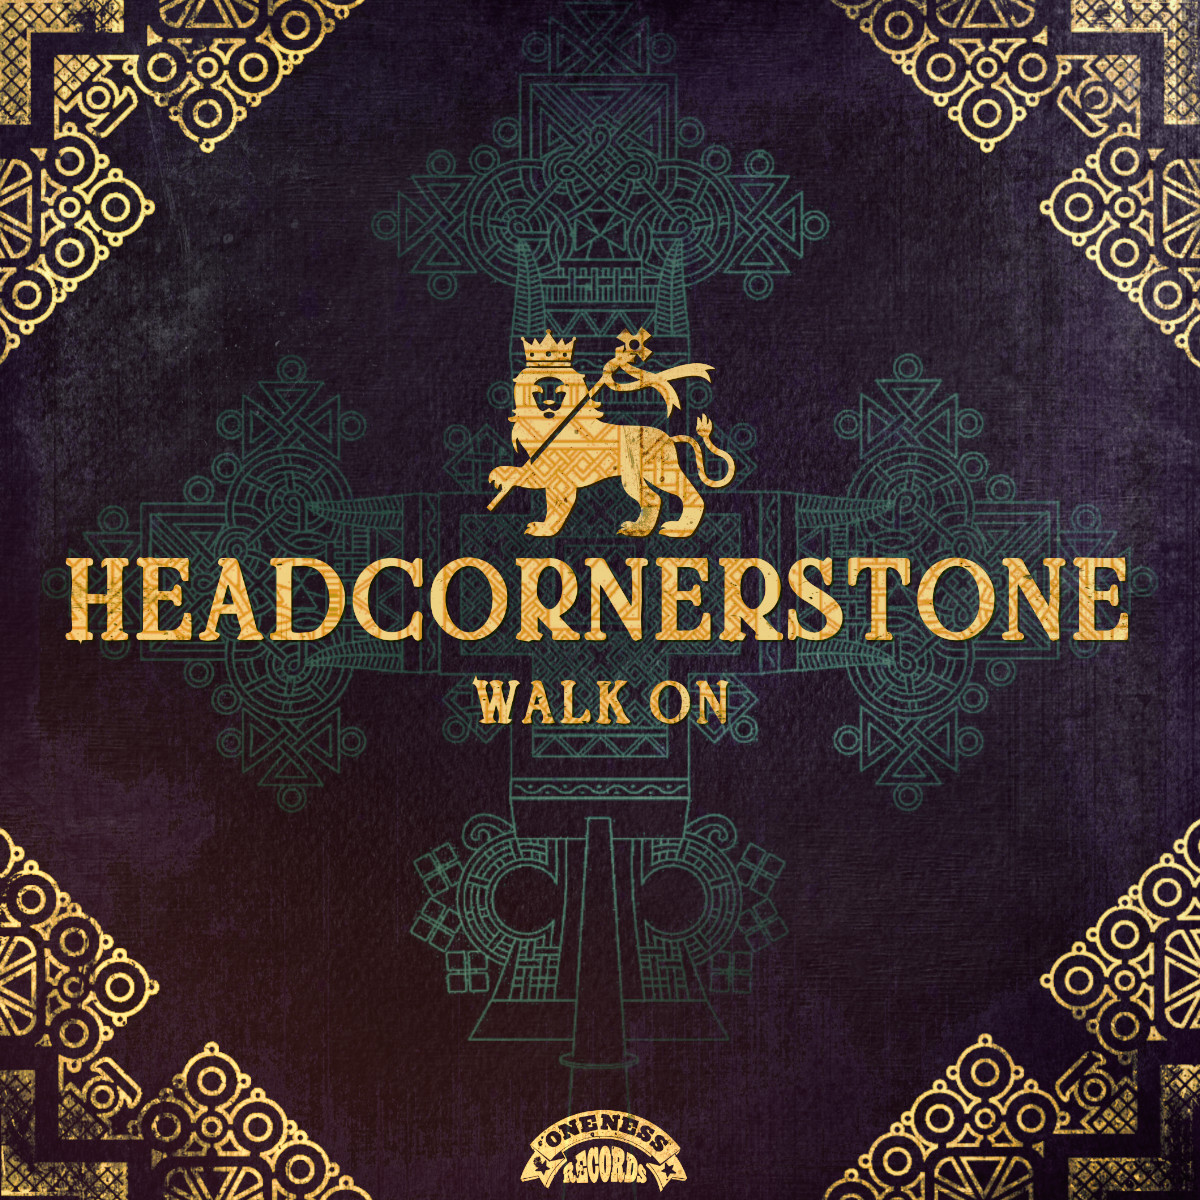 Walk On - Headcornerstone - Oneness Records - Release: 05/21/2021